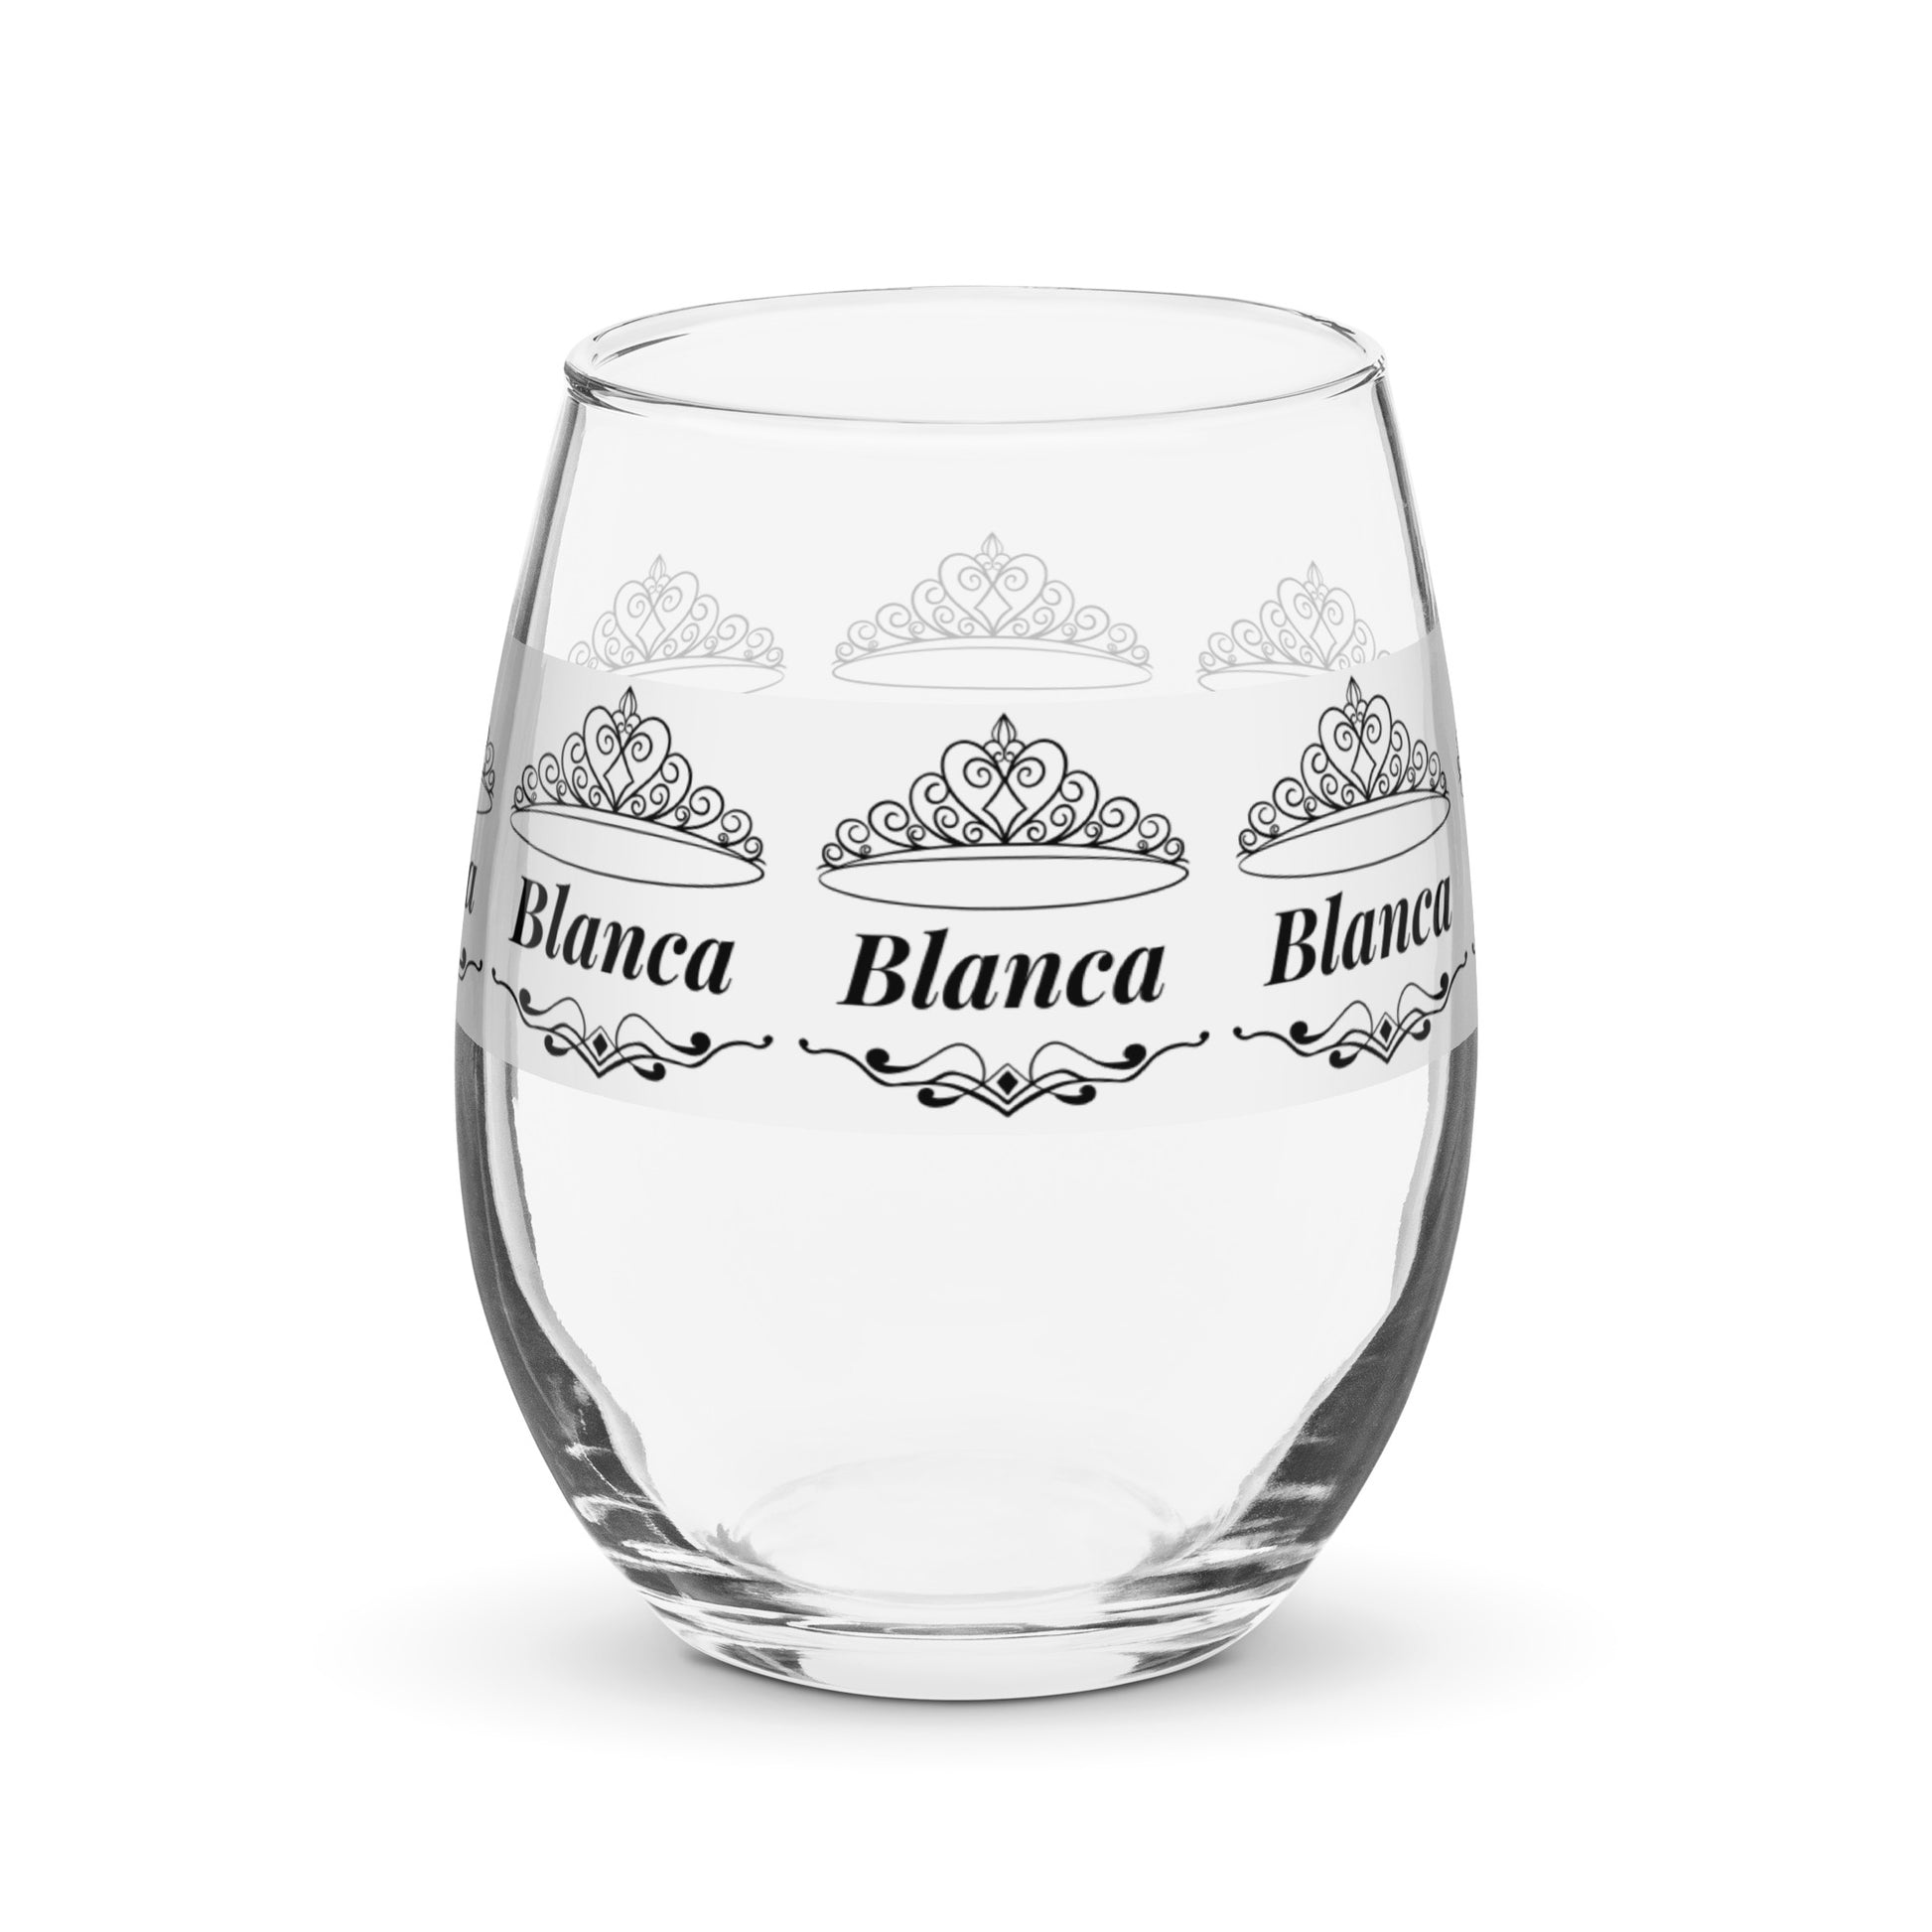 Blanca name wine glass personalized wine glass wine glass